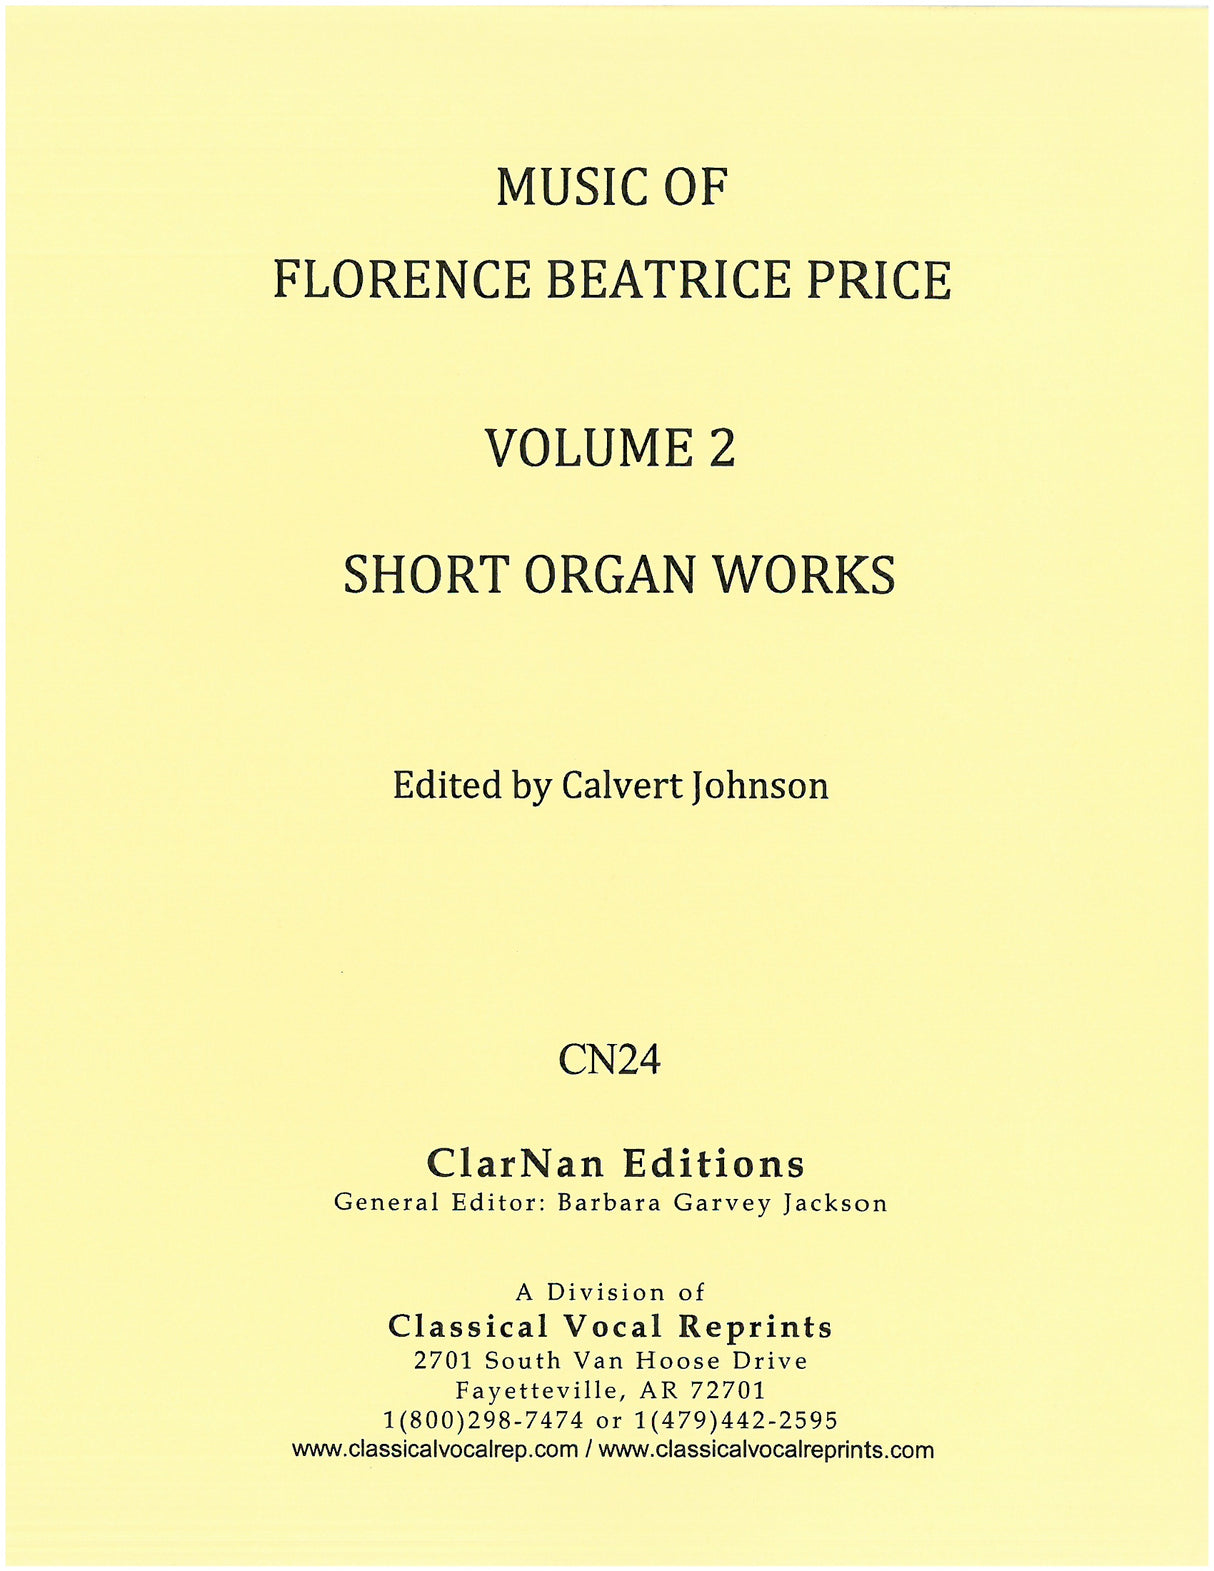 Music of Florence Price - Volume 2 (Short Organ Works)